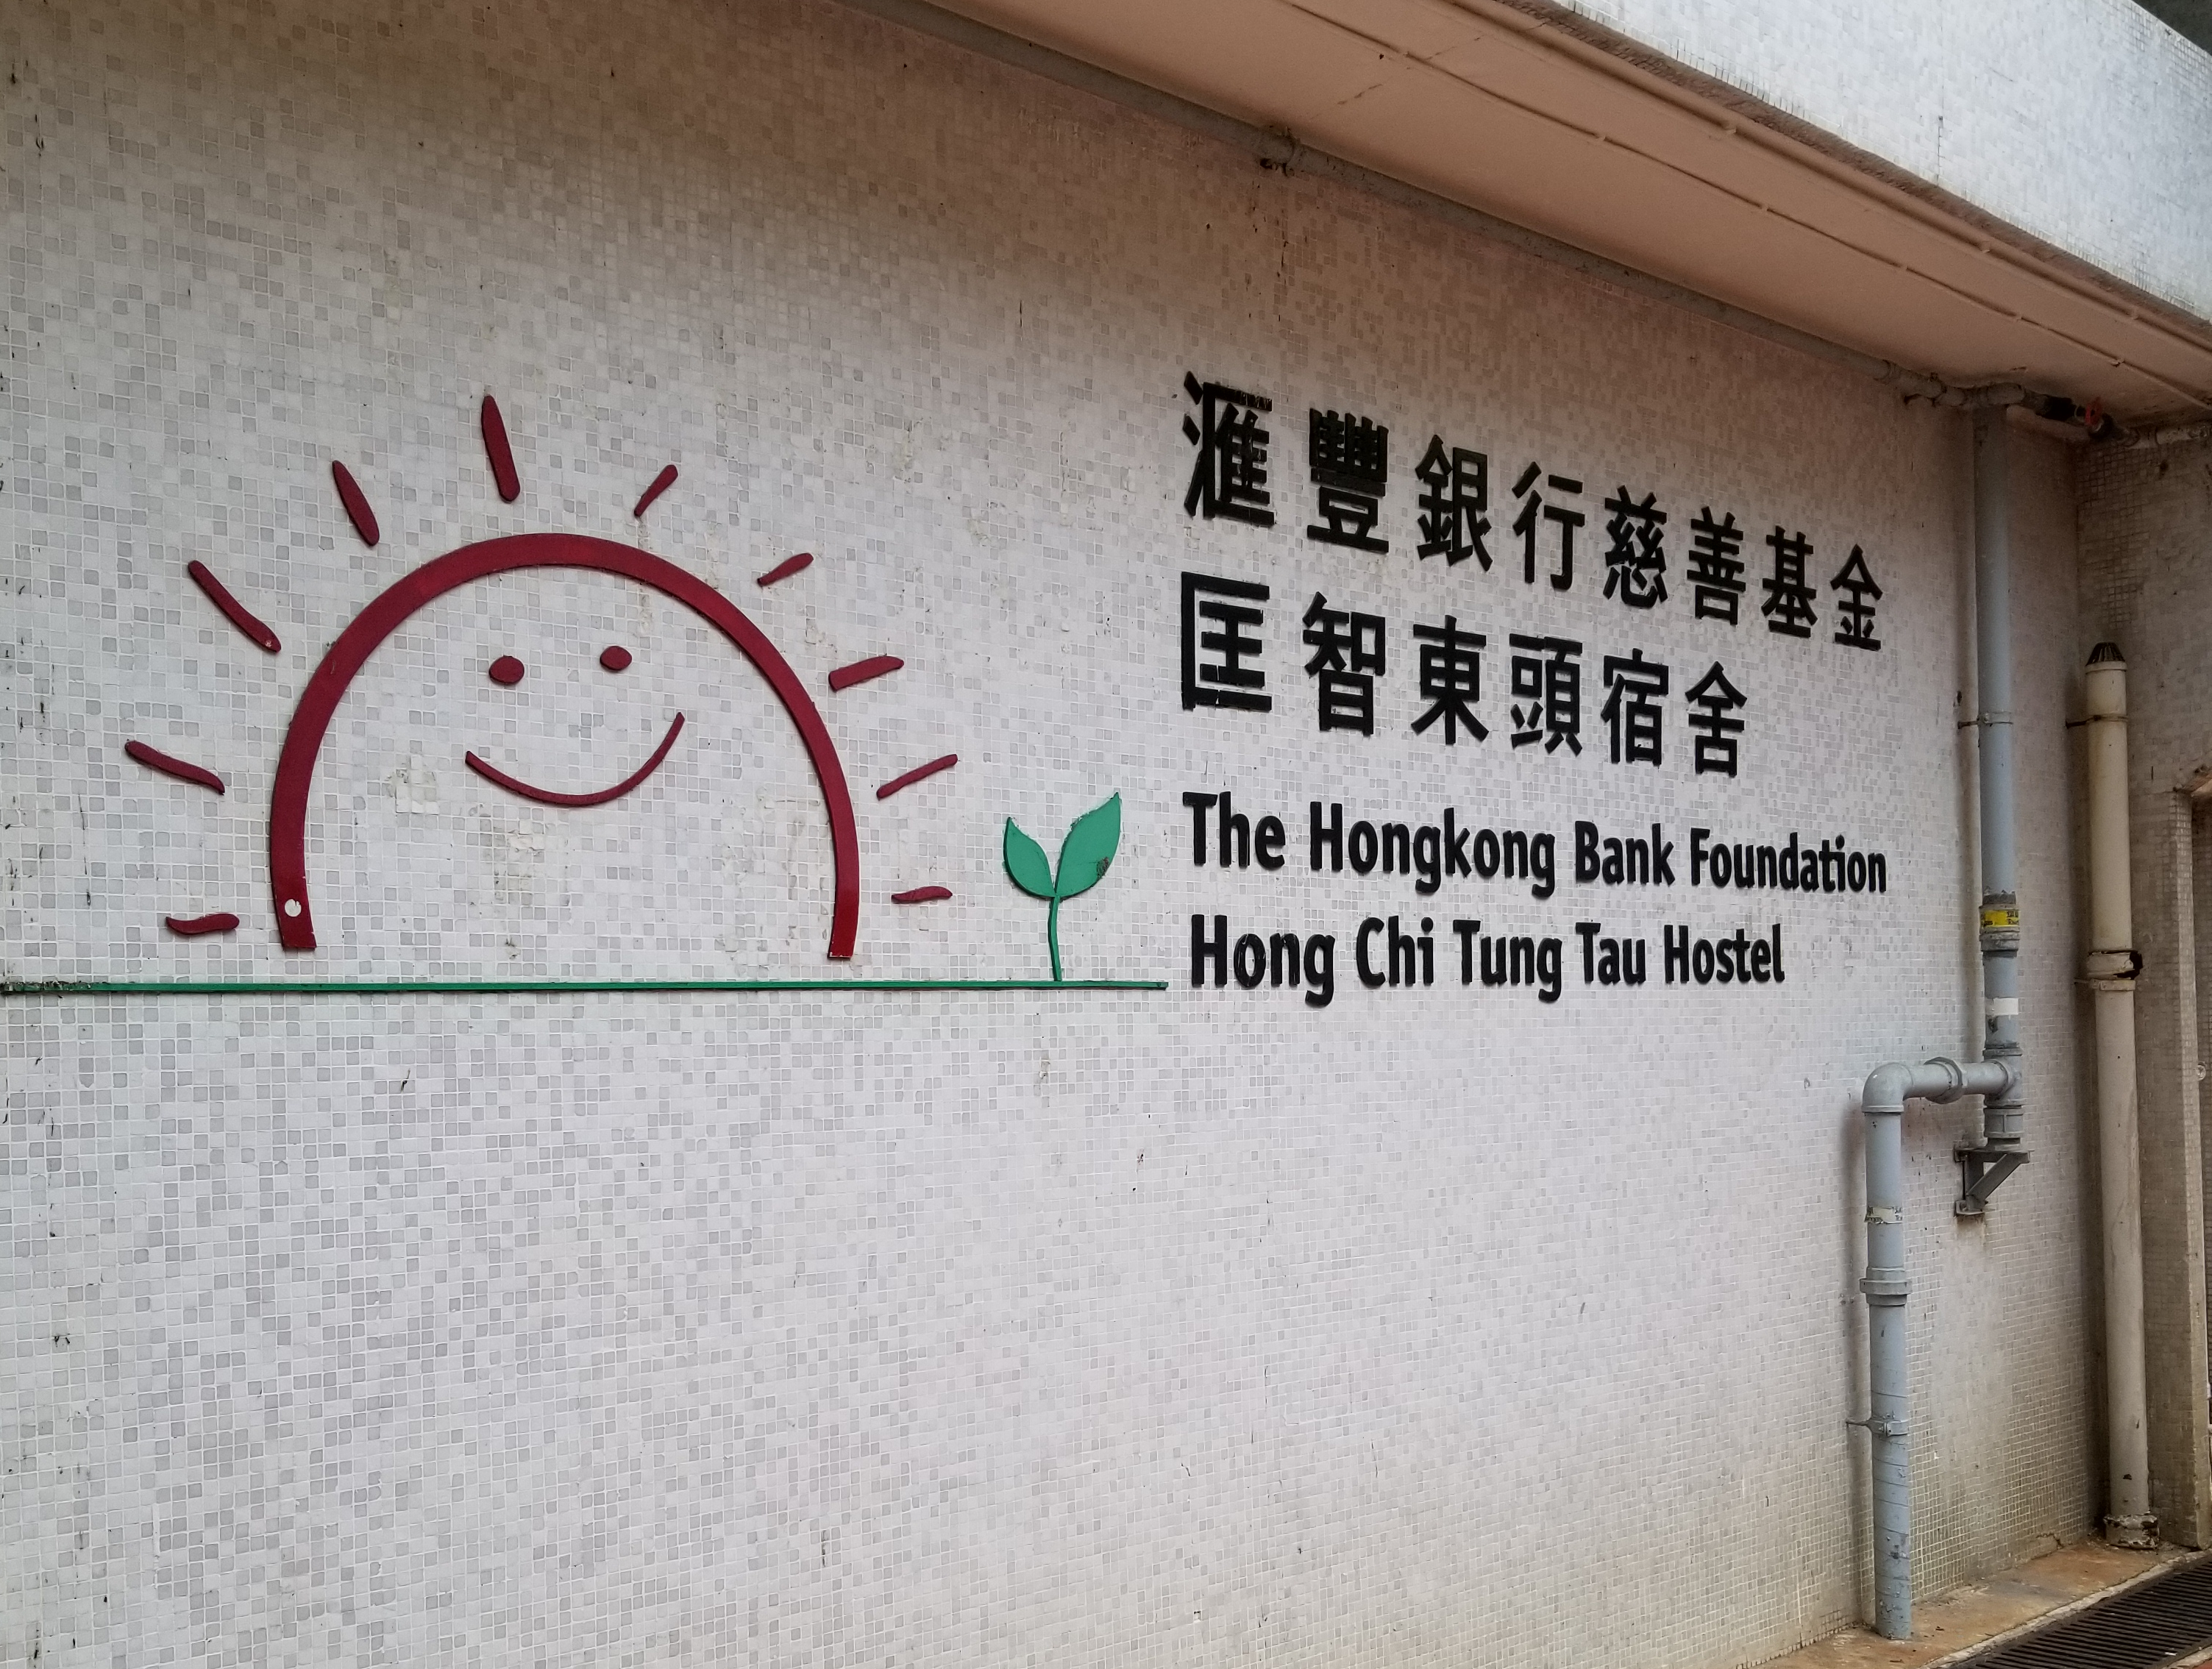 The Hongkong Bank Foundation Hong Chi Tung Tau Hostel